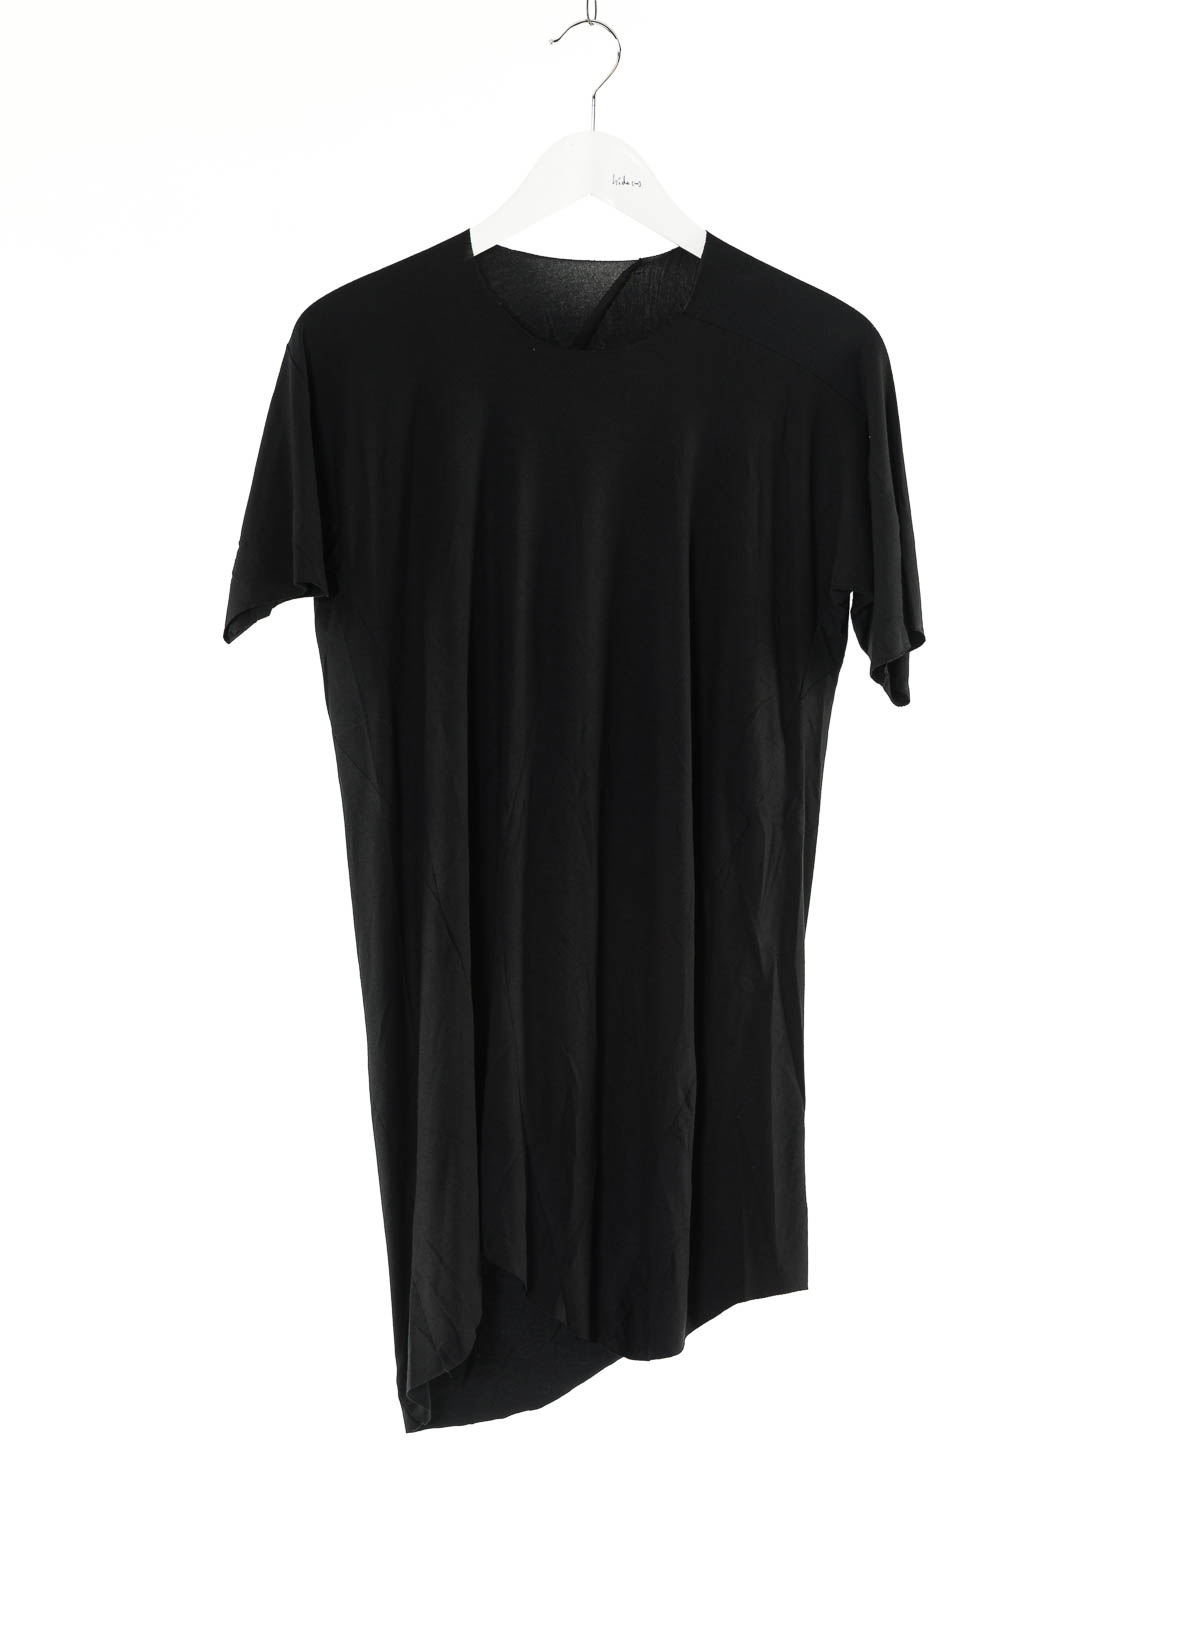 hide-m | LEON EMANUEL BLANCK Distortion Curved T-Shirt, black